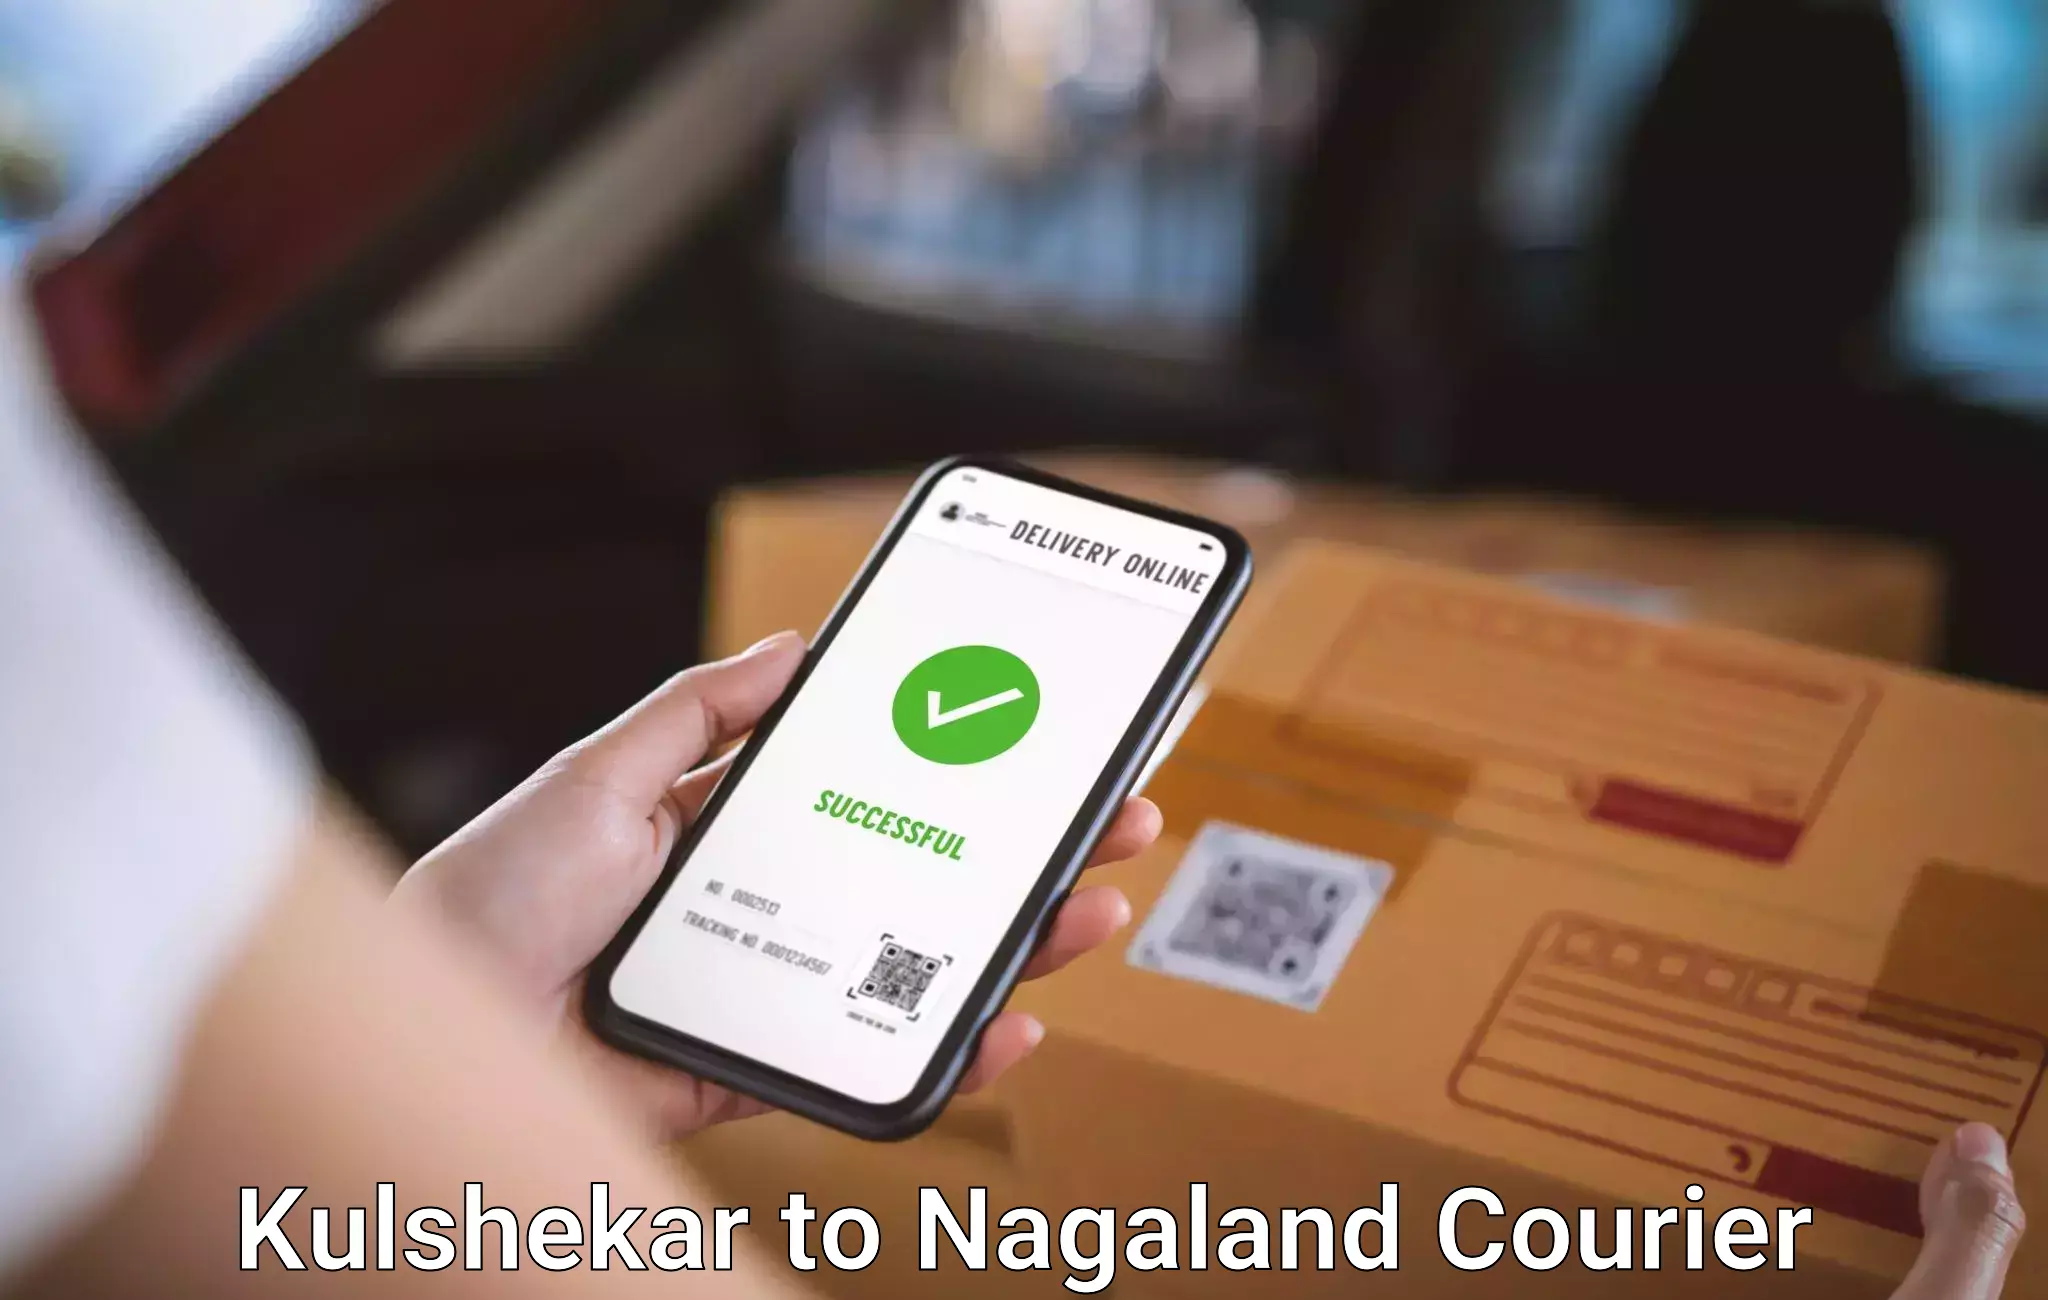 Baggage delivery optimization Kulshekar to Nagaland